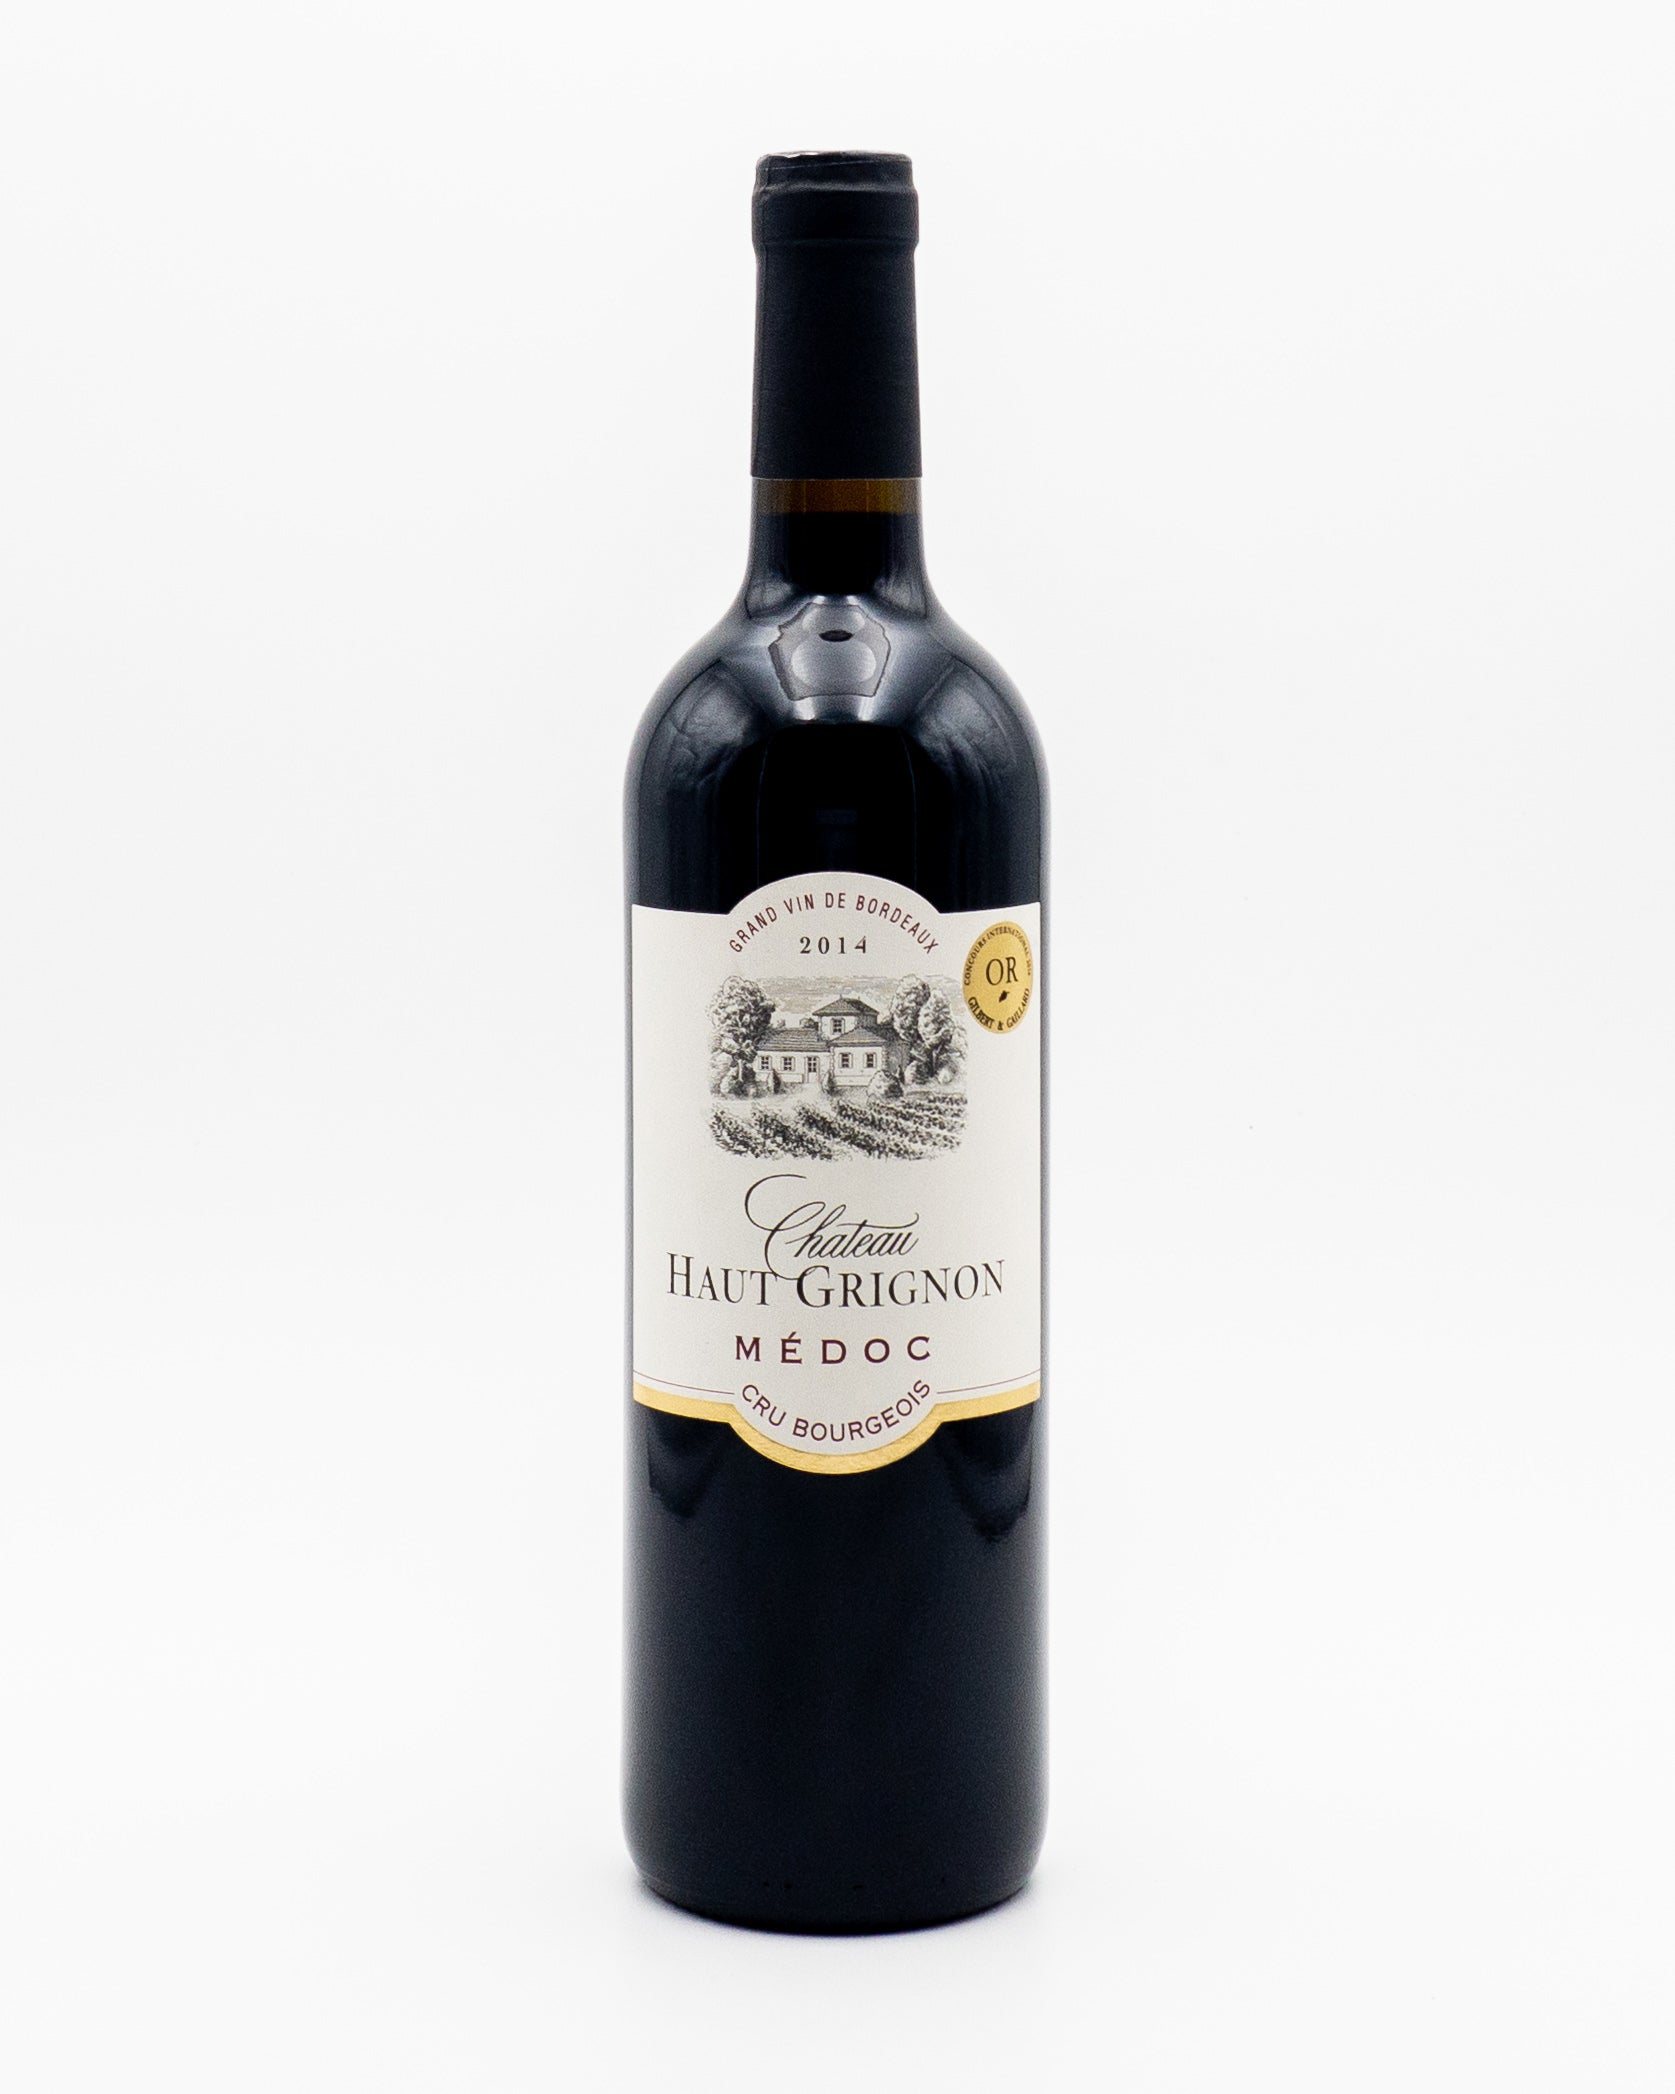 Grand Vin De Bordeaux Medoc Cru Bourgeois 2014 - Chateau Haut Grignon